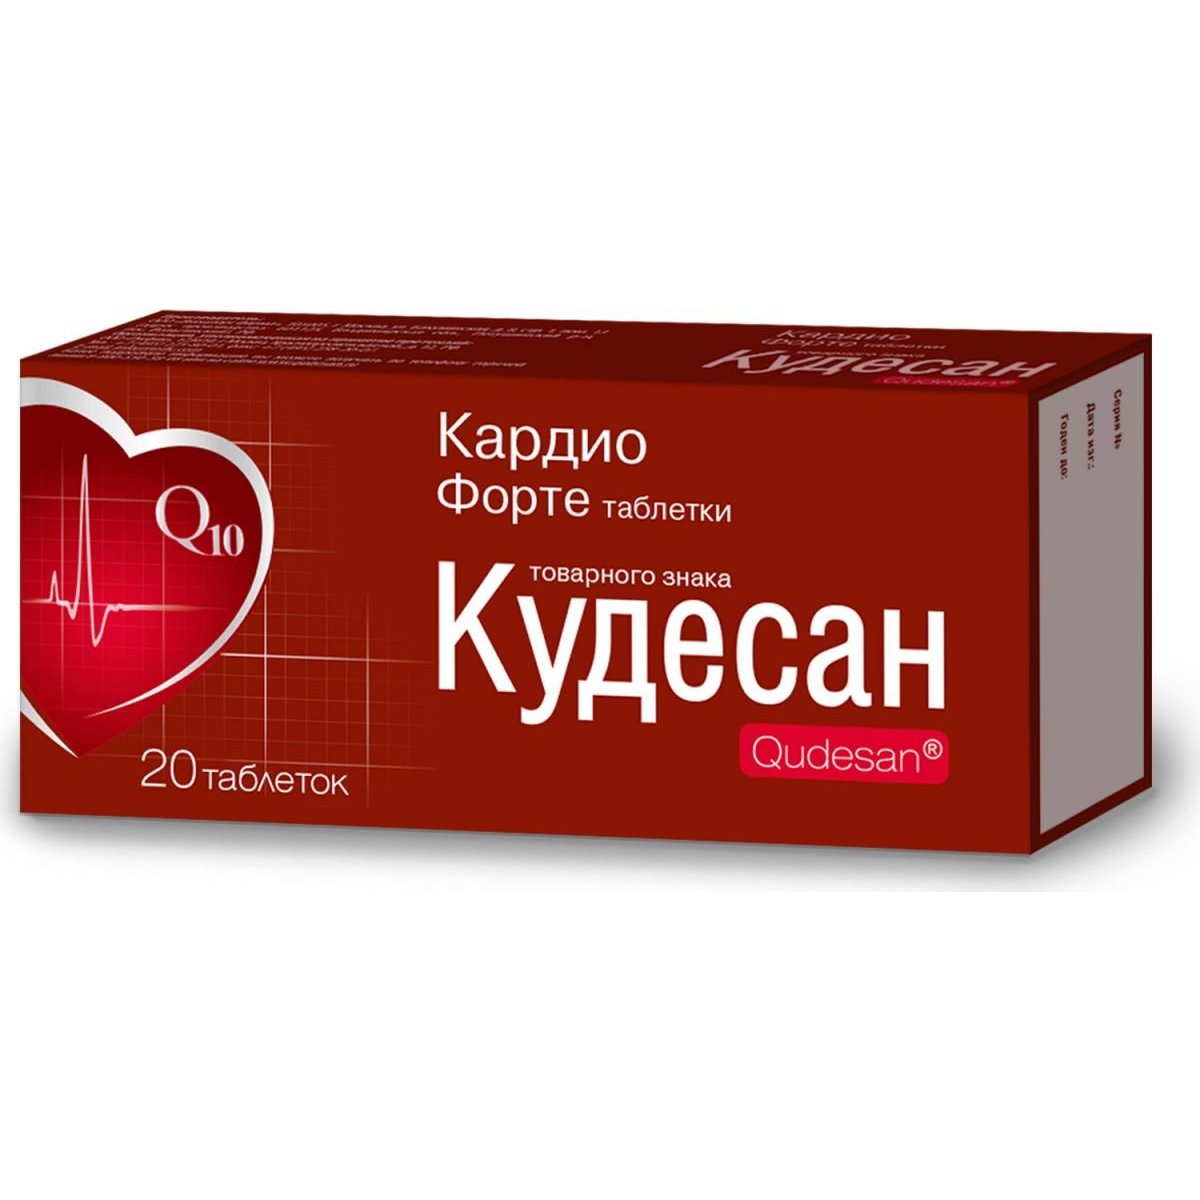 Кудесан - 20 отзывов и рейтинг покупателей | Мегаптека.ру